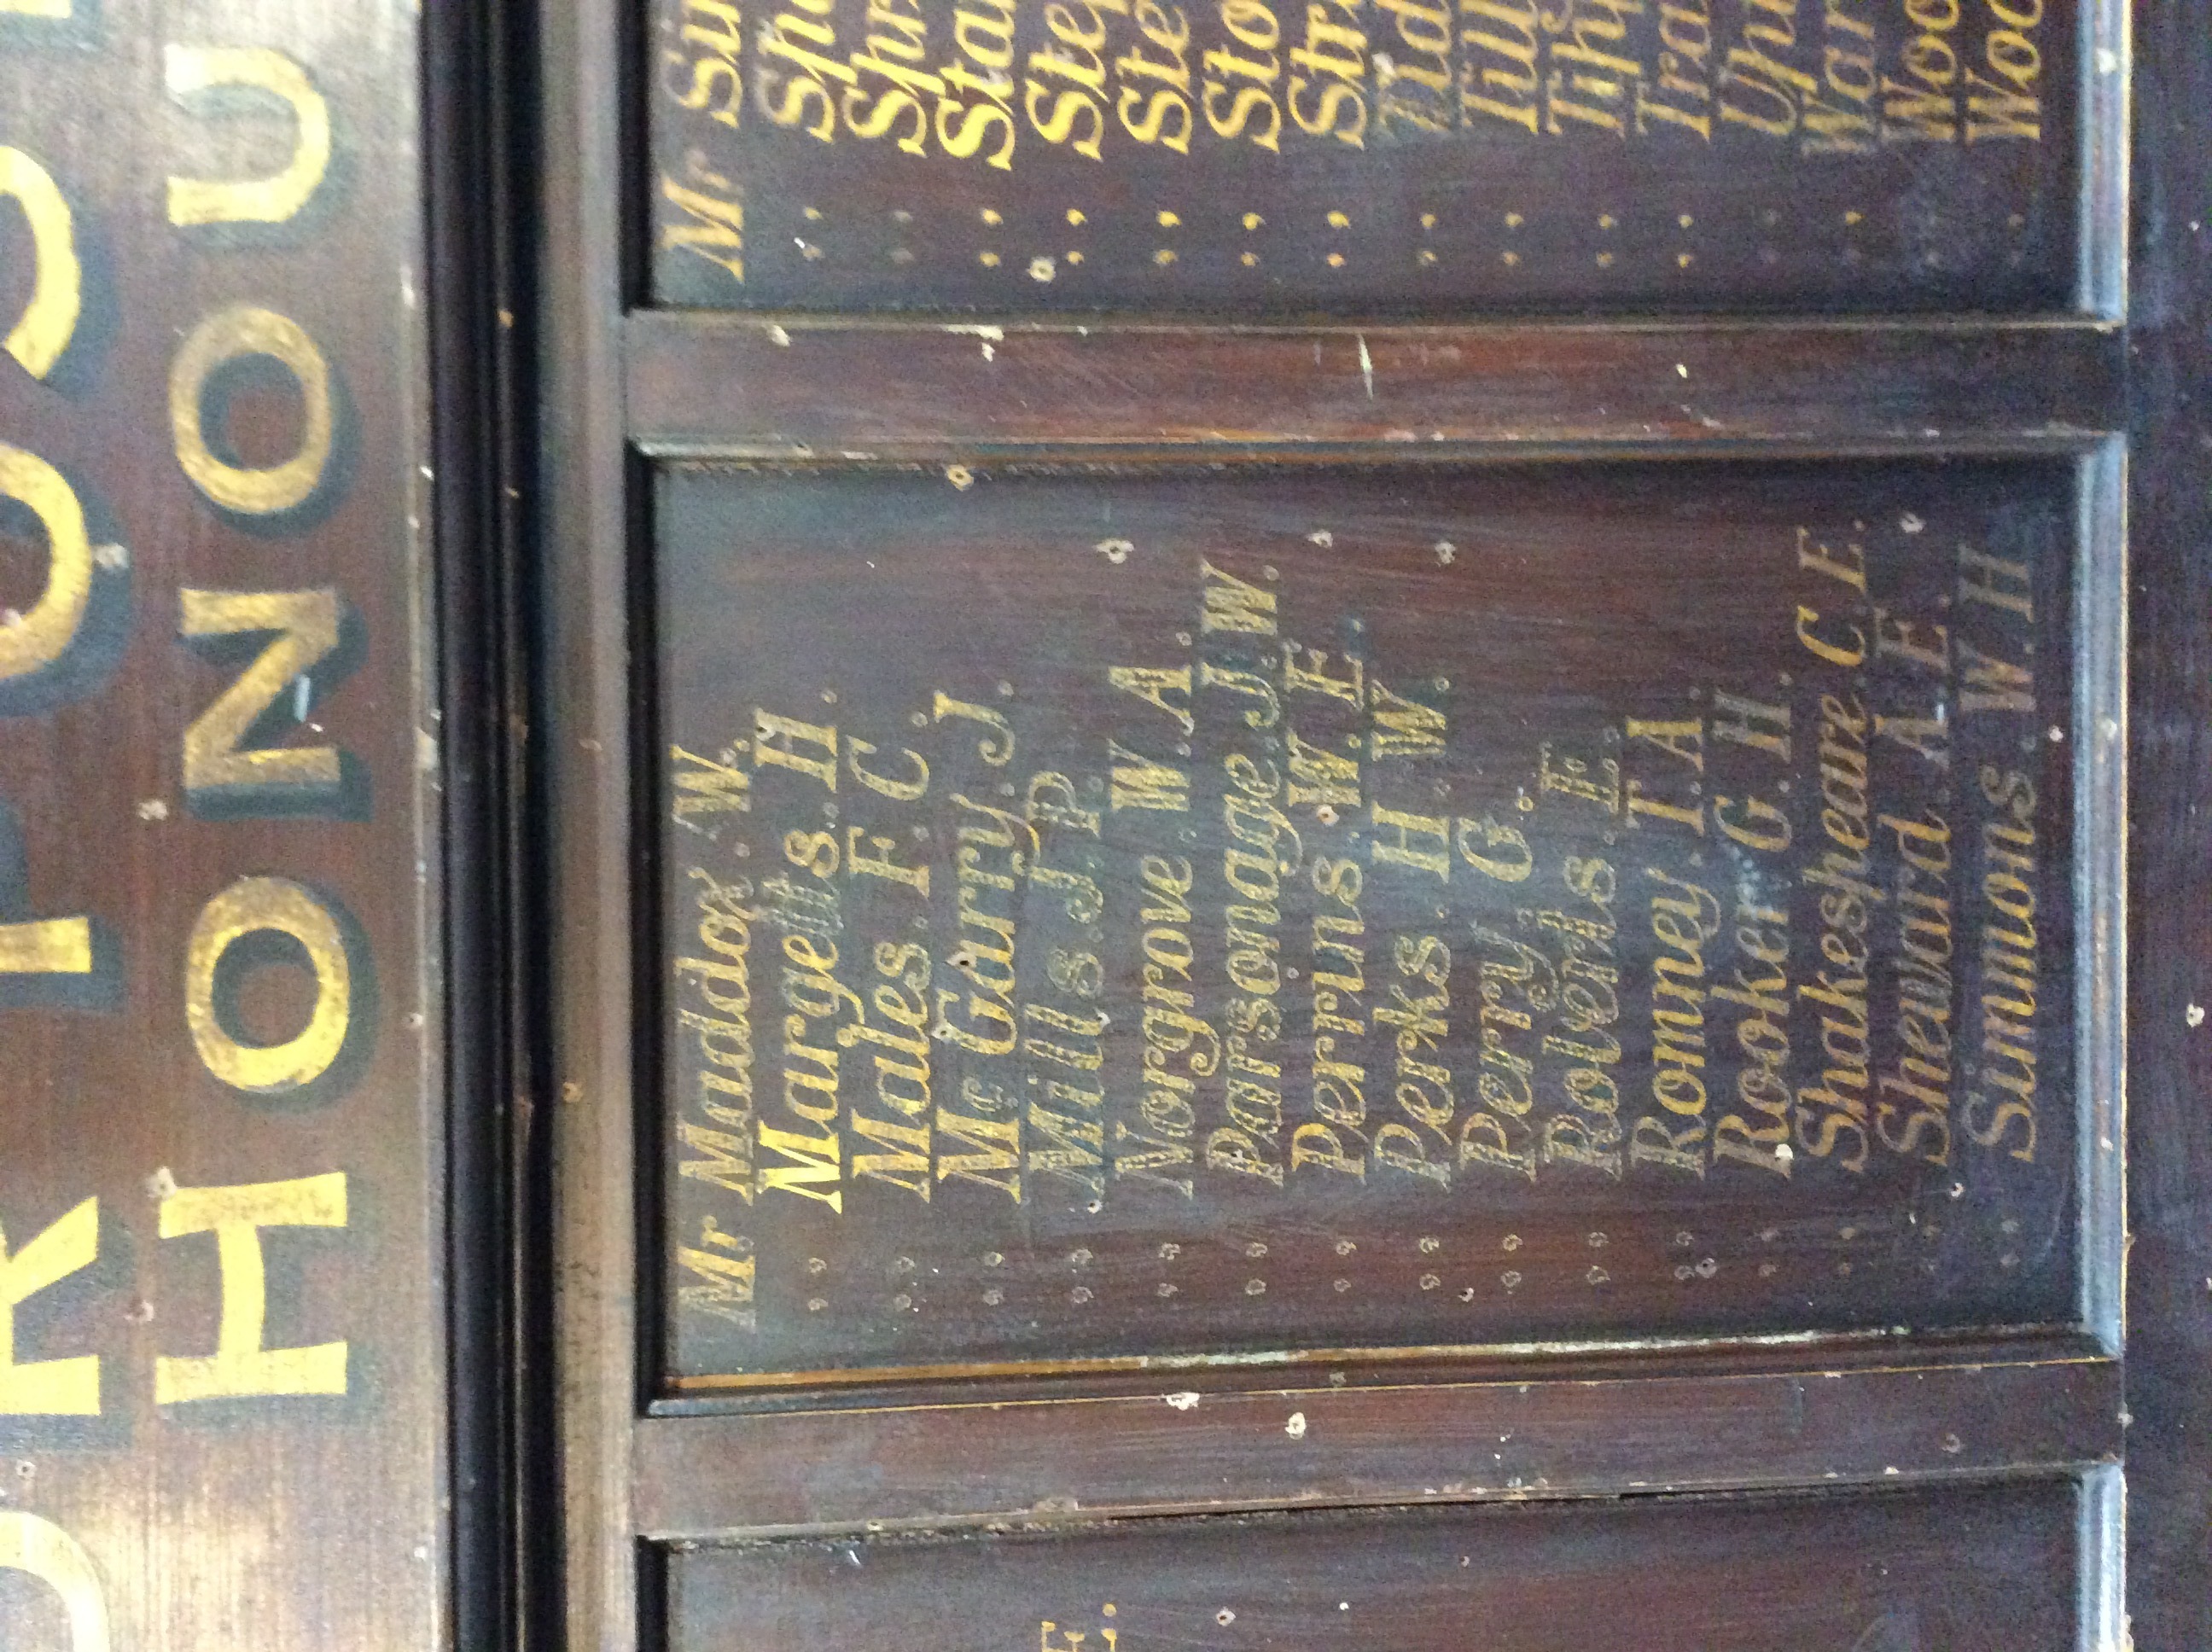 Aston Manor Post Office Roll of Honour - War Memorials Online